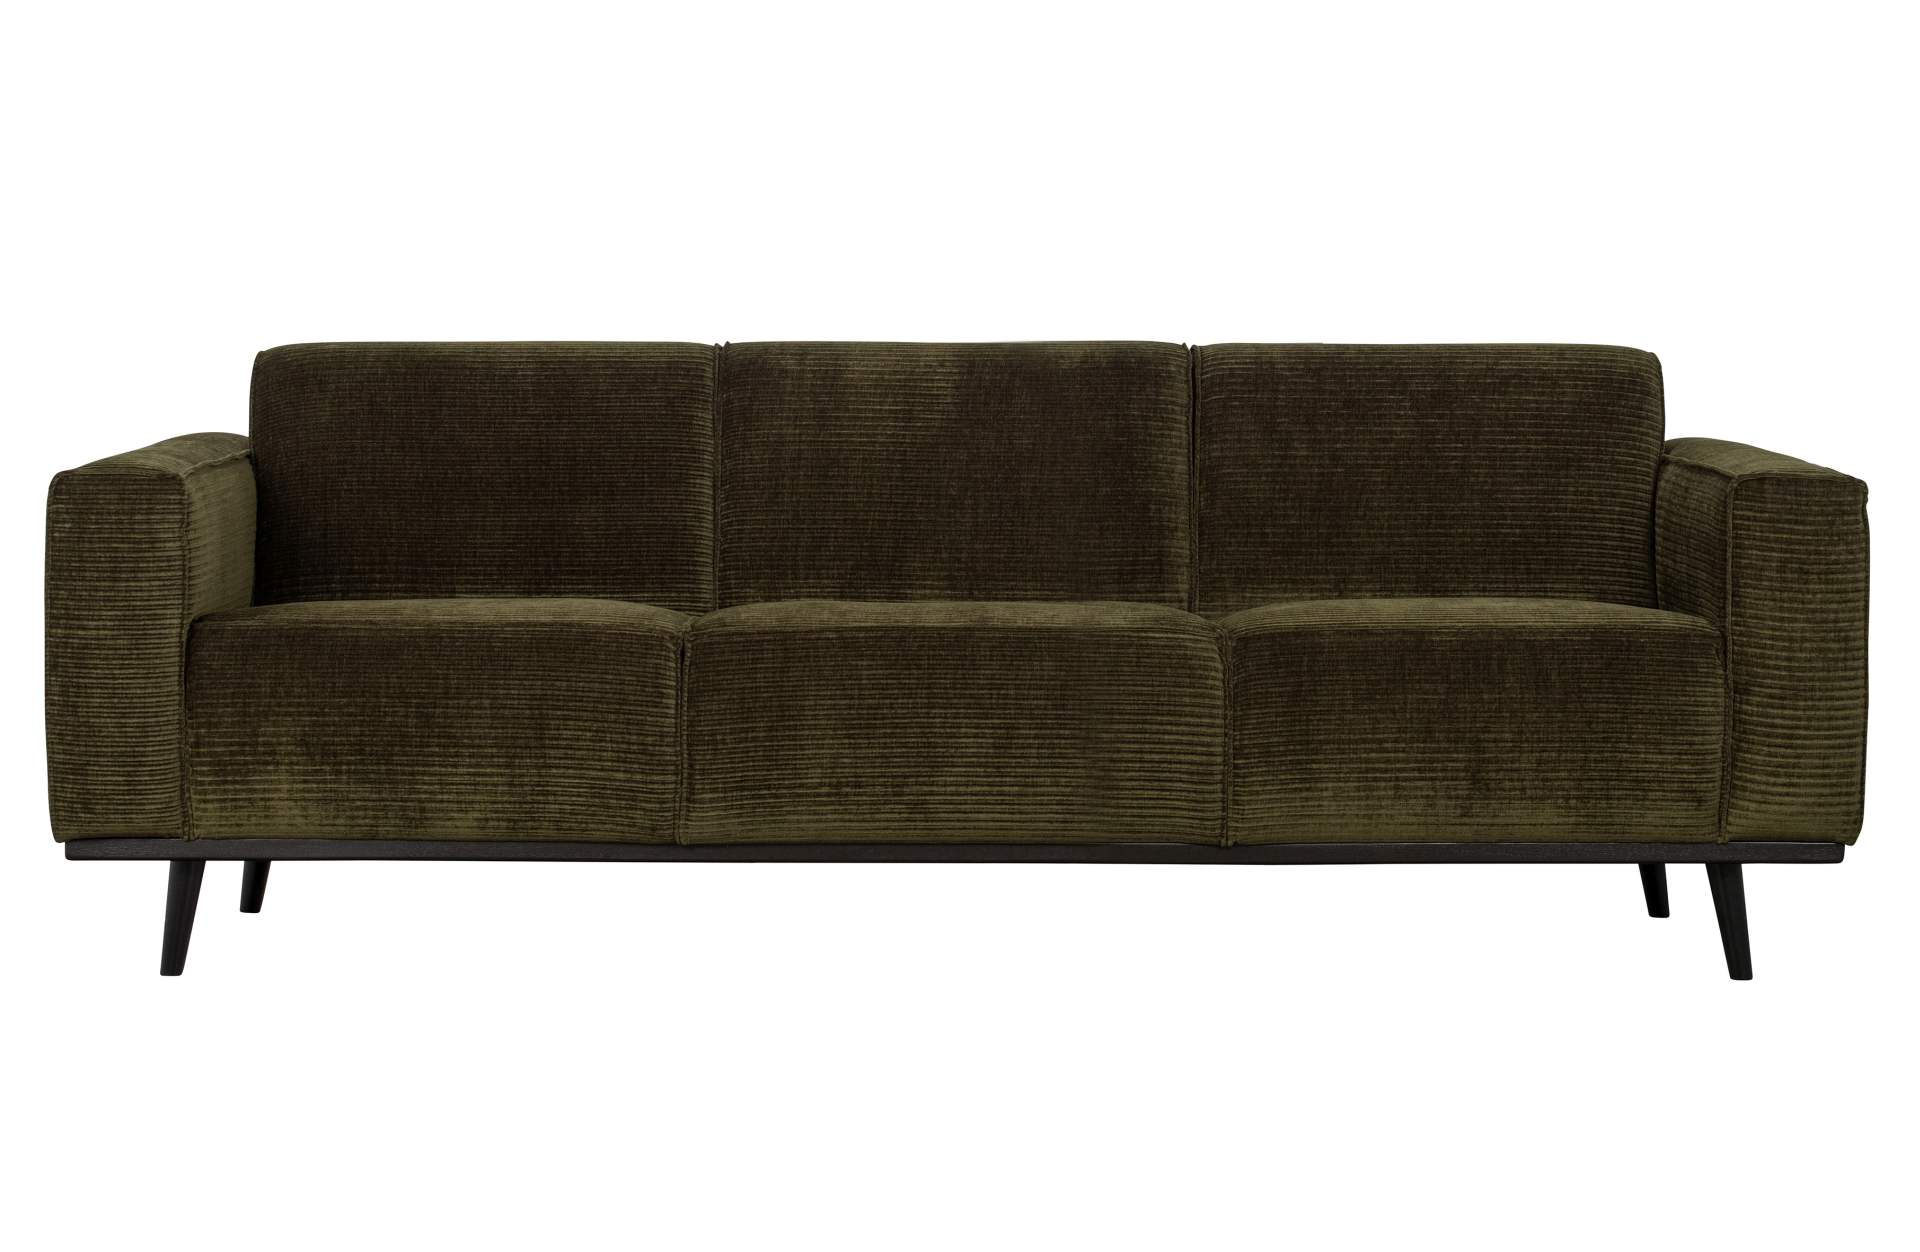 Das Sofa Statement überzeugt mit seinem modernen Design. Gefertigt wurde es aus gewebten Jacquard, welches einen Olive Farbton besitzen. Das Gestell ist aus Birkenholz und hat eine schwarze Farbe. Das Sofa hat eine Breite von 230 cm.